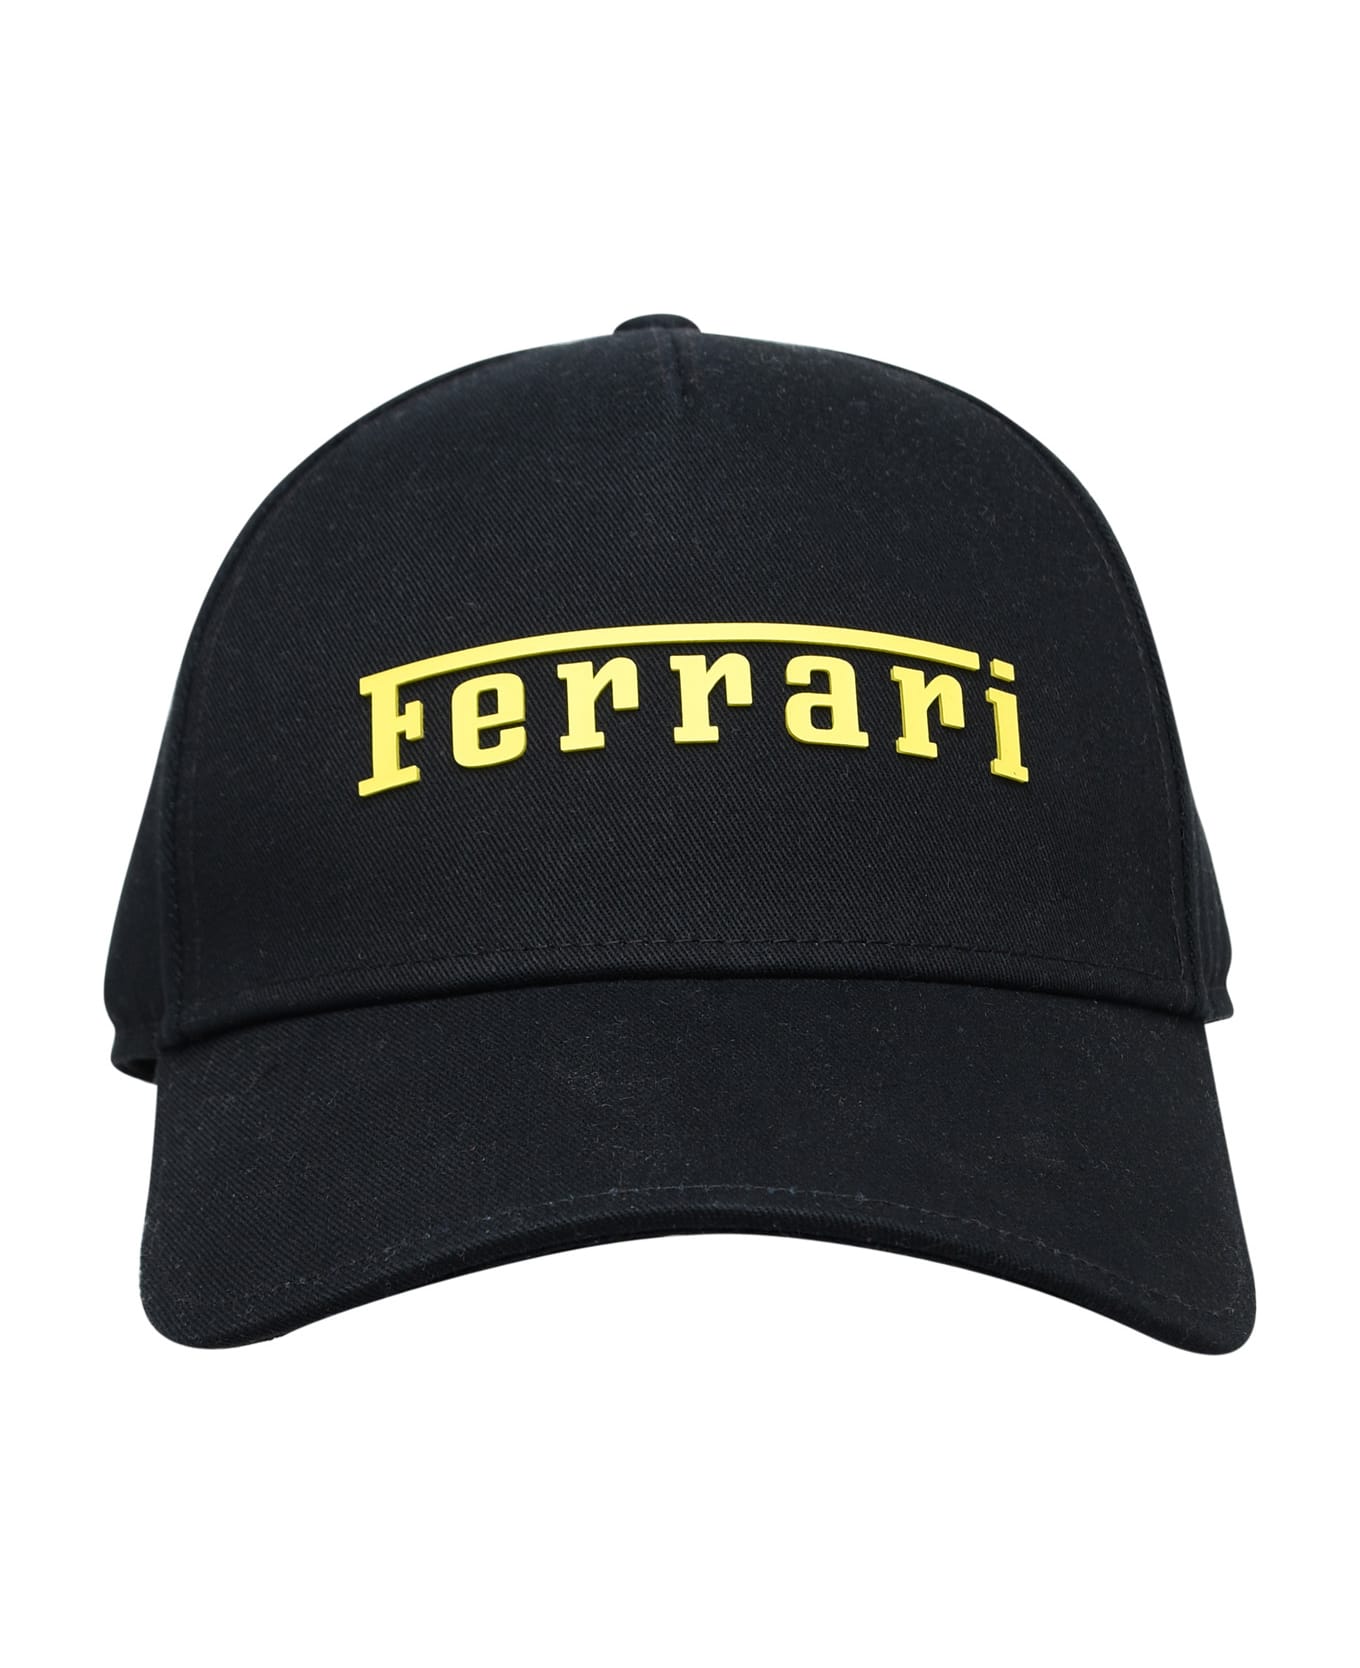 Ferrari Black Cotton Cap - Black